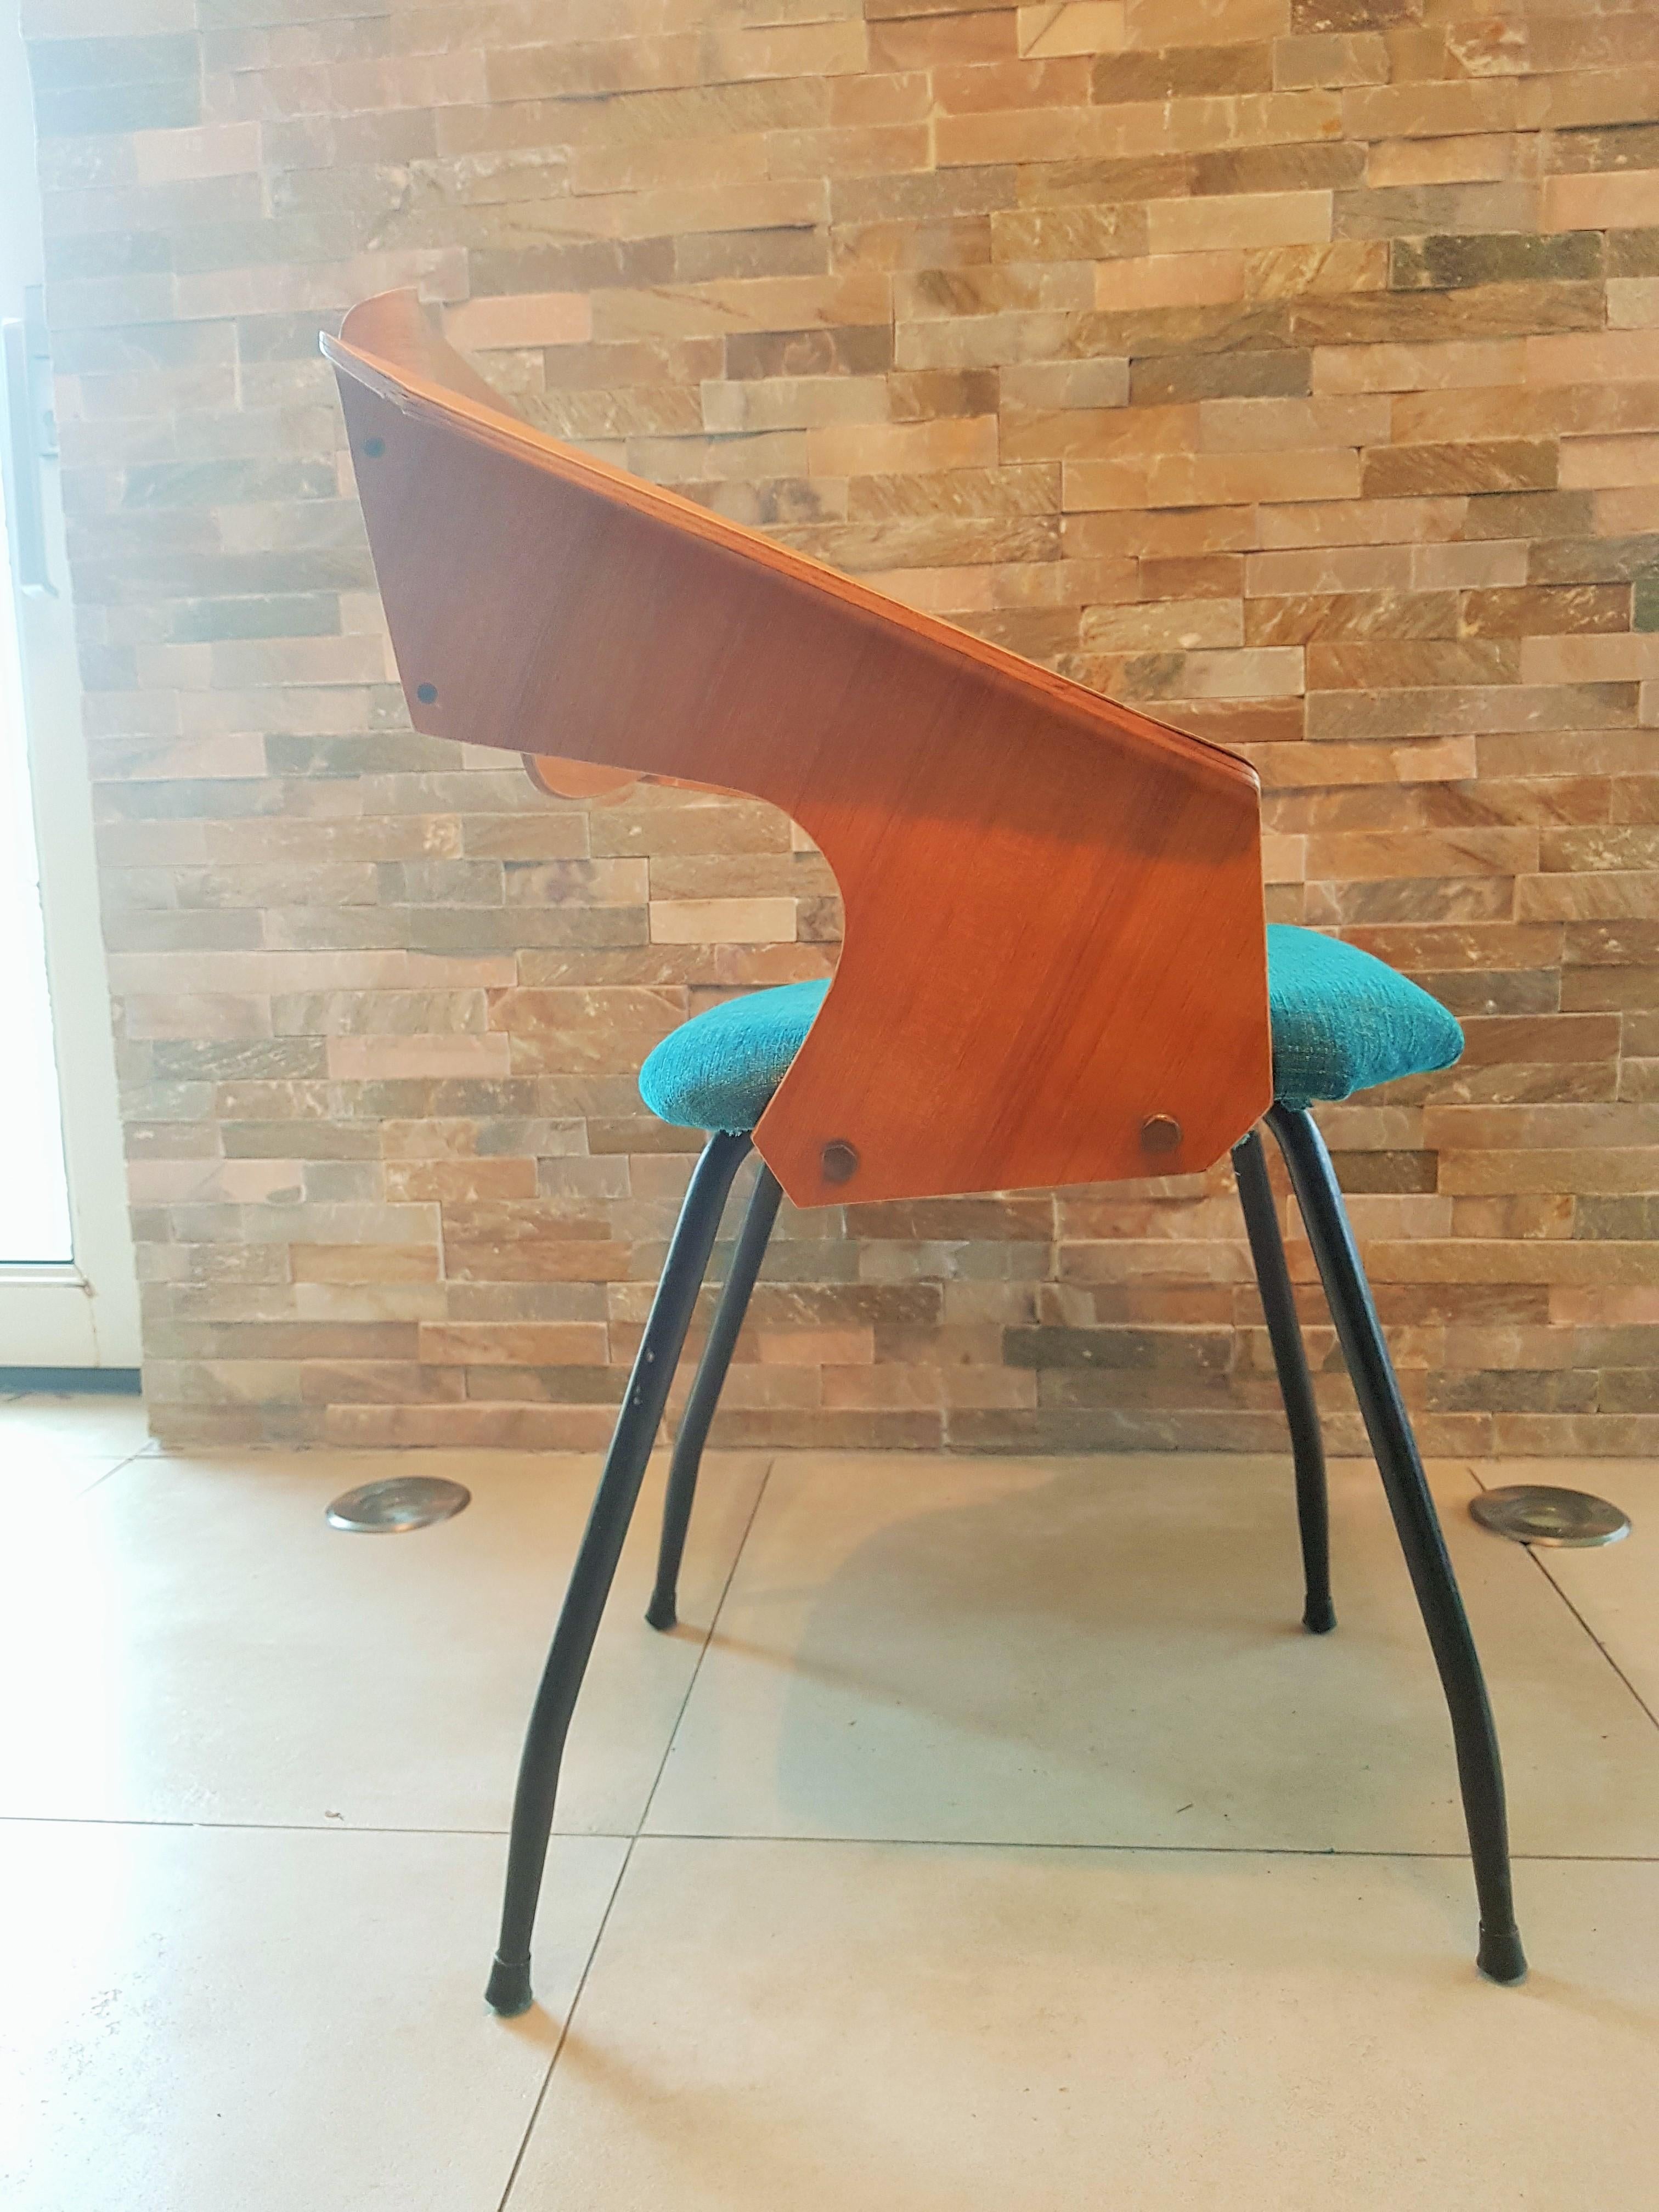 Zwei schöne Original-Bugholzstühle von Carlo Ratti, hergestellt von seiner Firma Industria Legni Curvati in Lissone, Mailand.
Neu gepolstert mit einem zweifarbigen Stoff.